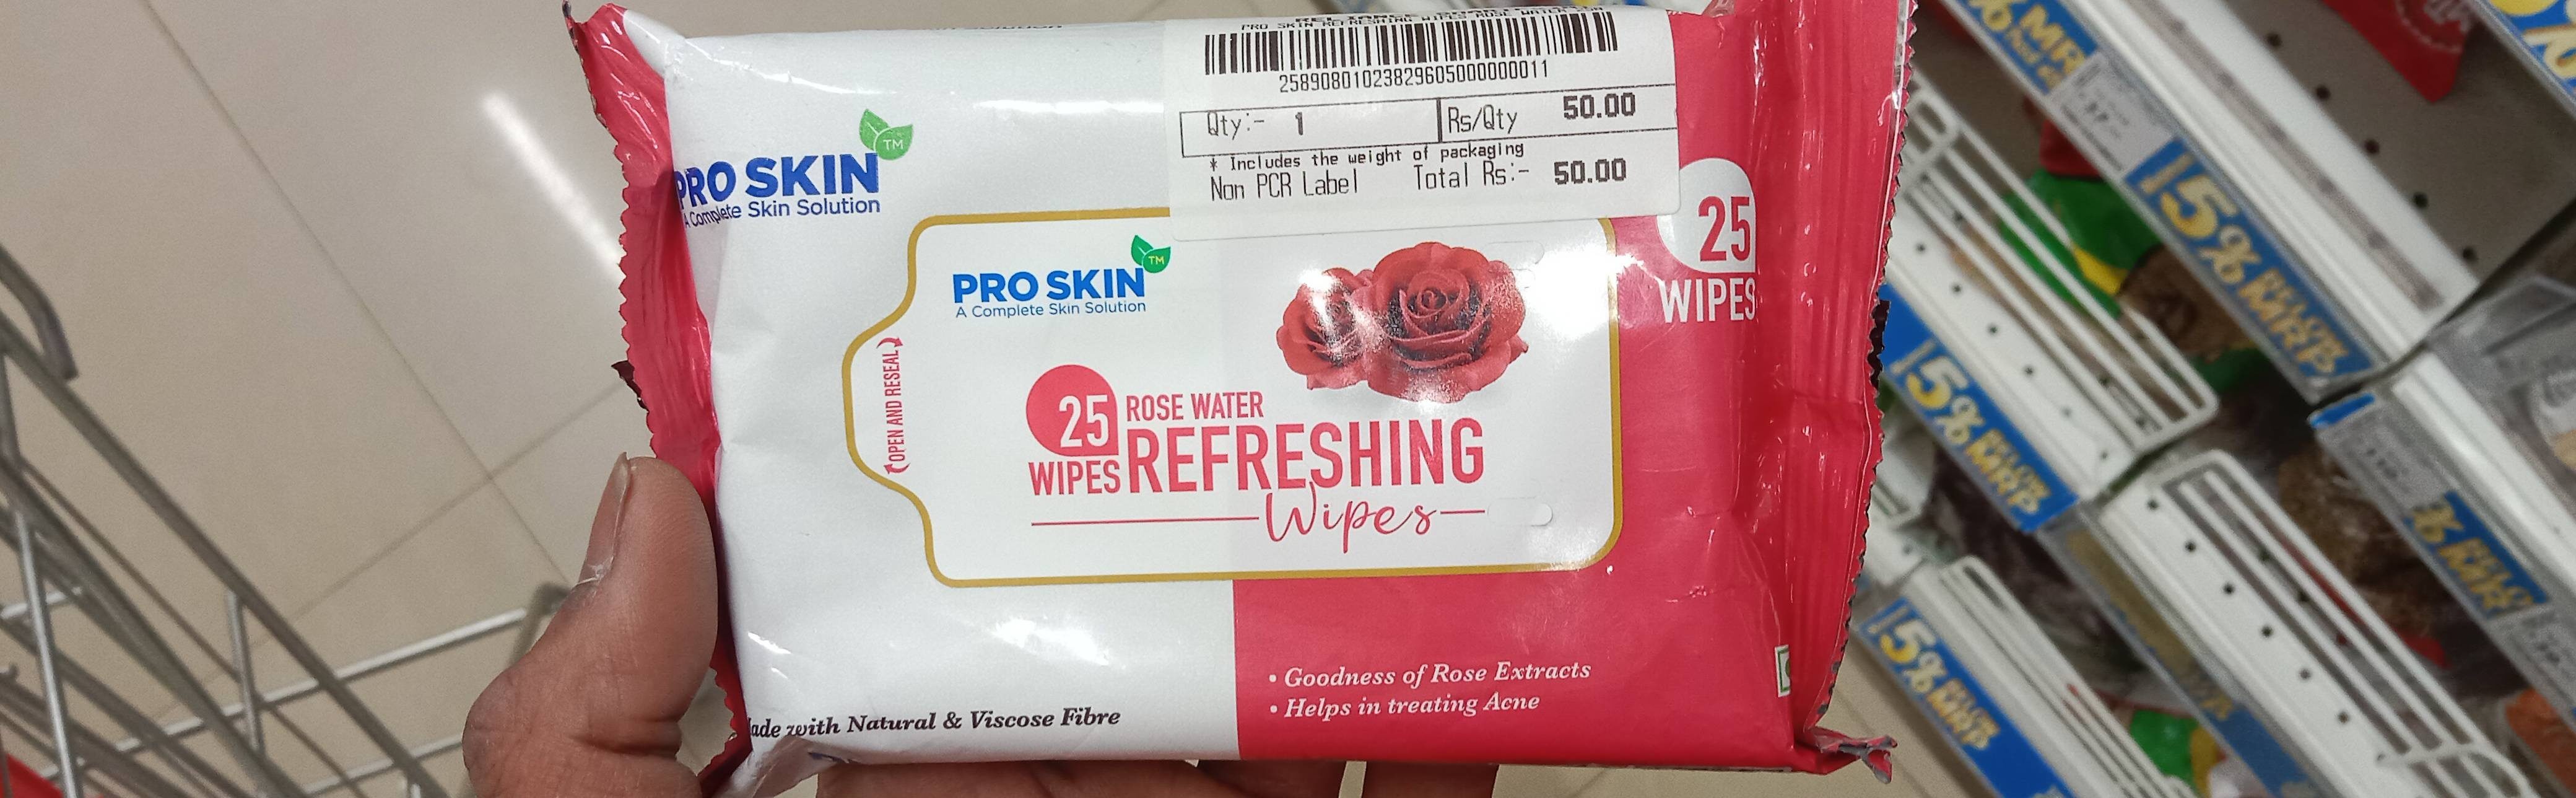 Pro skin Rose Water Wipes 25 - Produto - en